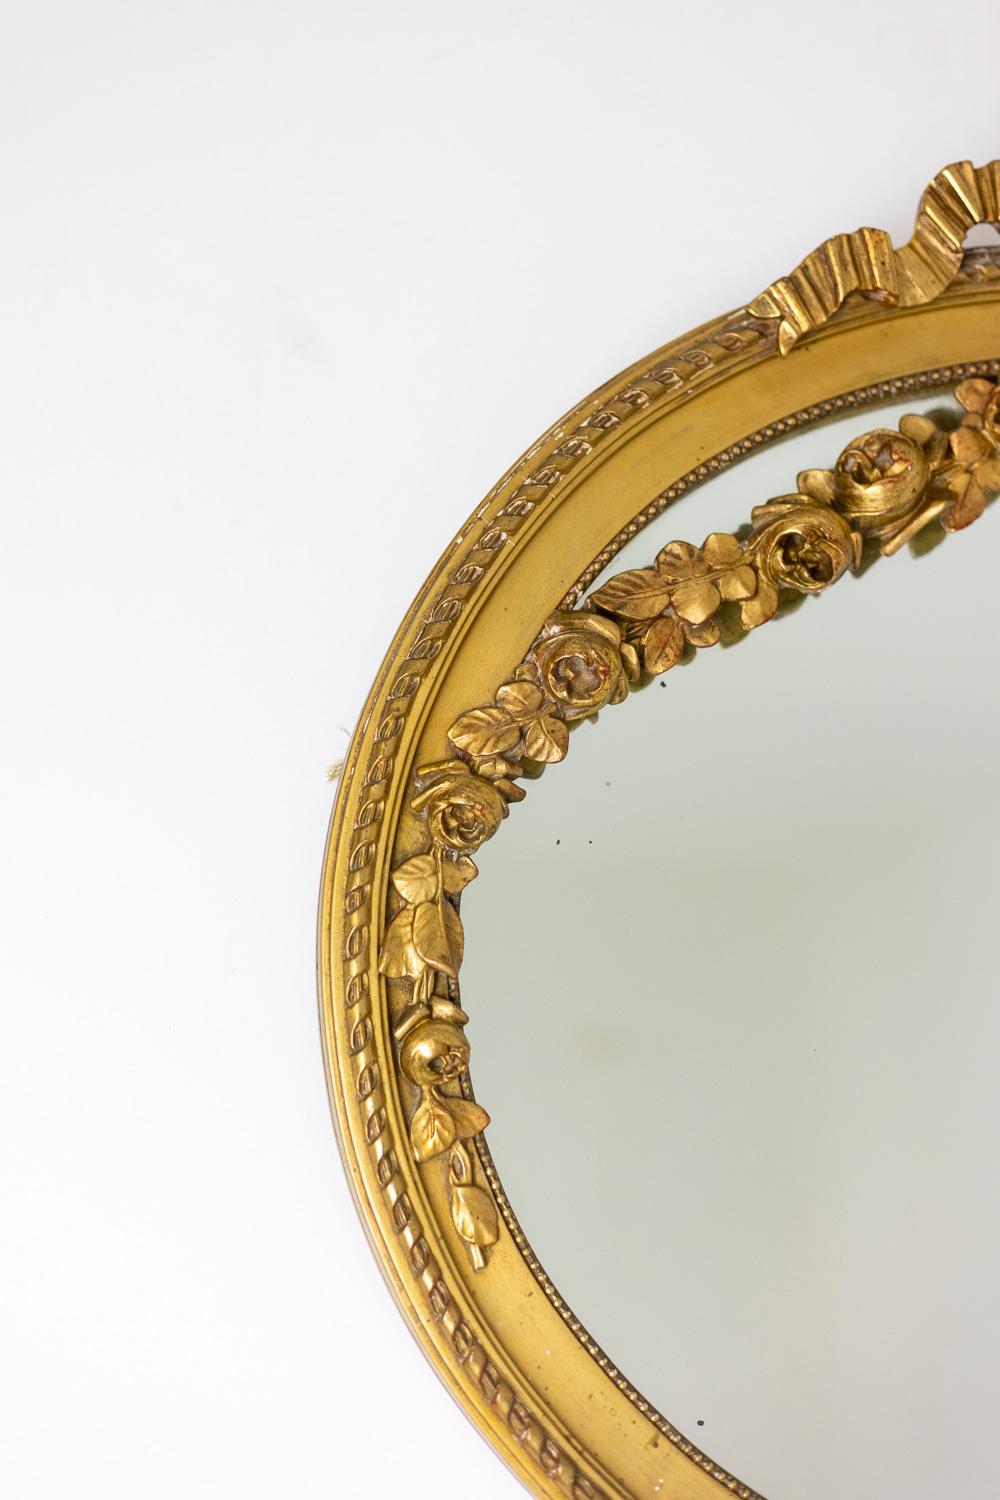 Spiegel aus vergoldetem und geschnitztem Holz, verziert mit einem Band, Blumengirlanden und einem perlenbesetzten Fries, oval.

Französisches Werk, um 1880 hergestellt.

Abmessungen: H 66 x L 68 x P 7 cm (ca. 66 x 68 x 7).

